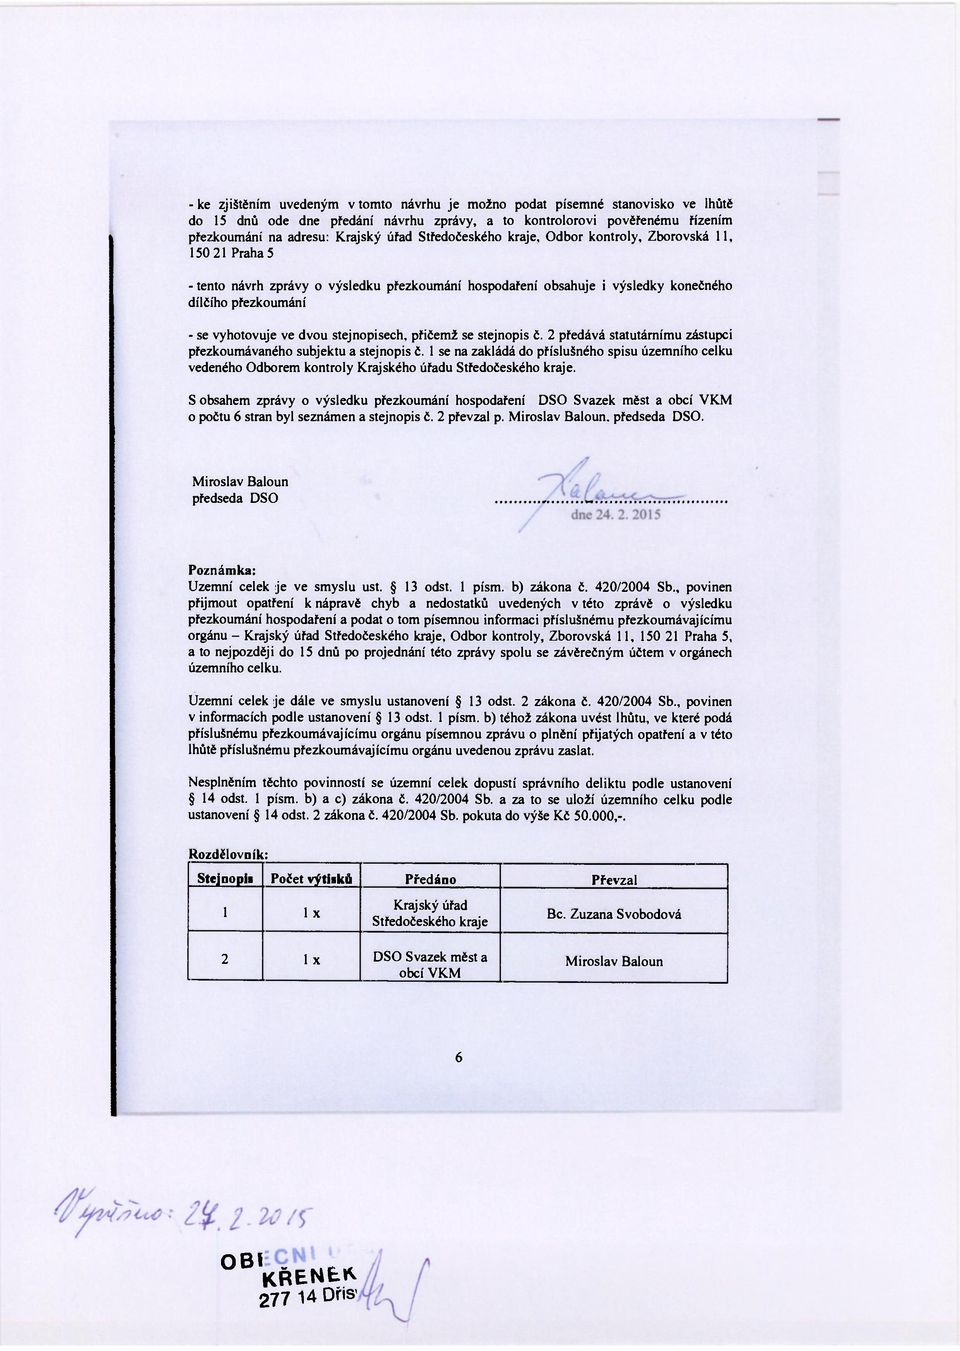 Odbor kontroly, Zborovská 11, 150 21 Praha 5 - tento návrh zprávy o výsledku přezkoumání hospodaření obsahuje i výsledky konečného dílčího přezkoumání - se vyhotovuje ve dvou stejnopisech, přičemž se